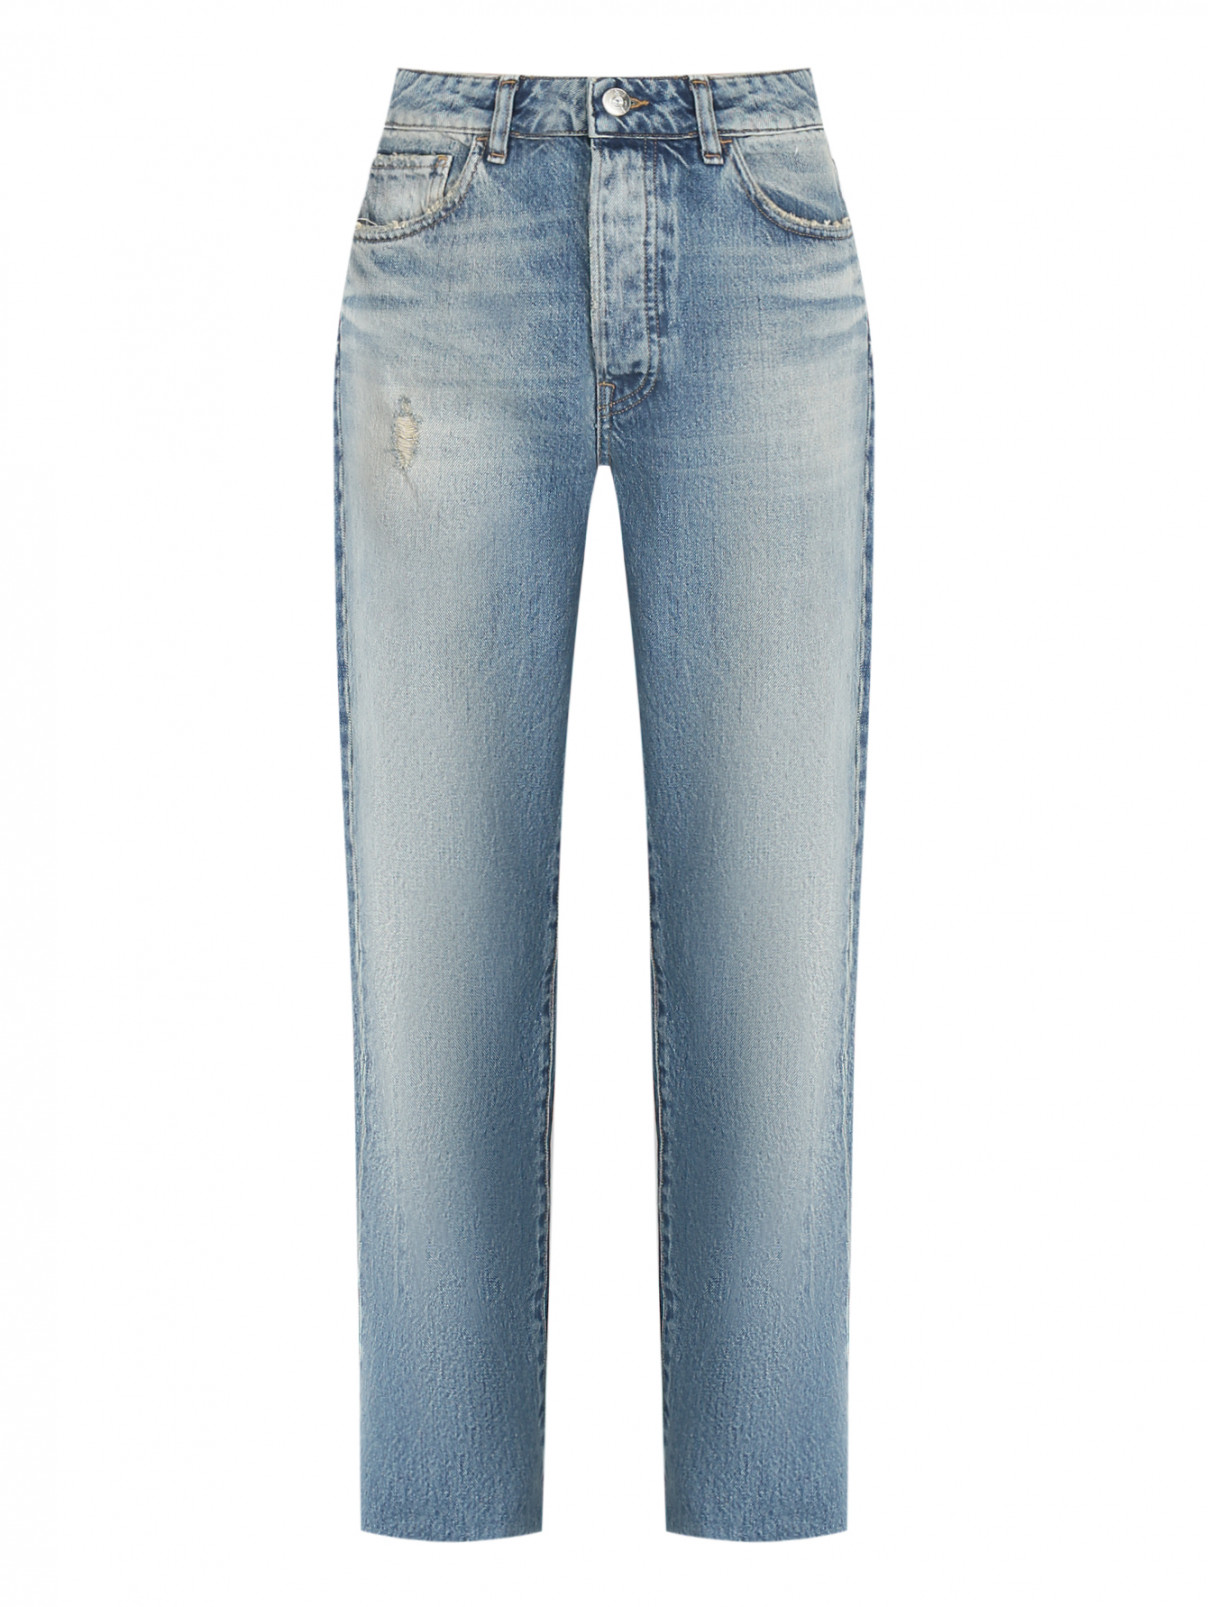 Укороченные джинсы из хлопка 3x1  –  Общий вид  – Цвет:  Синий